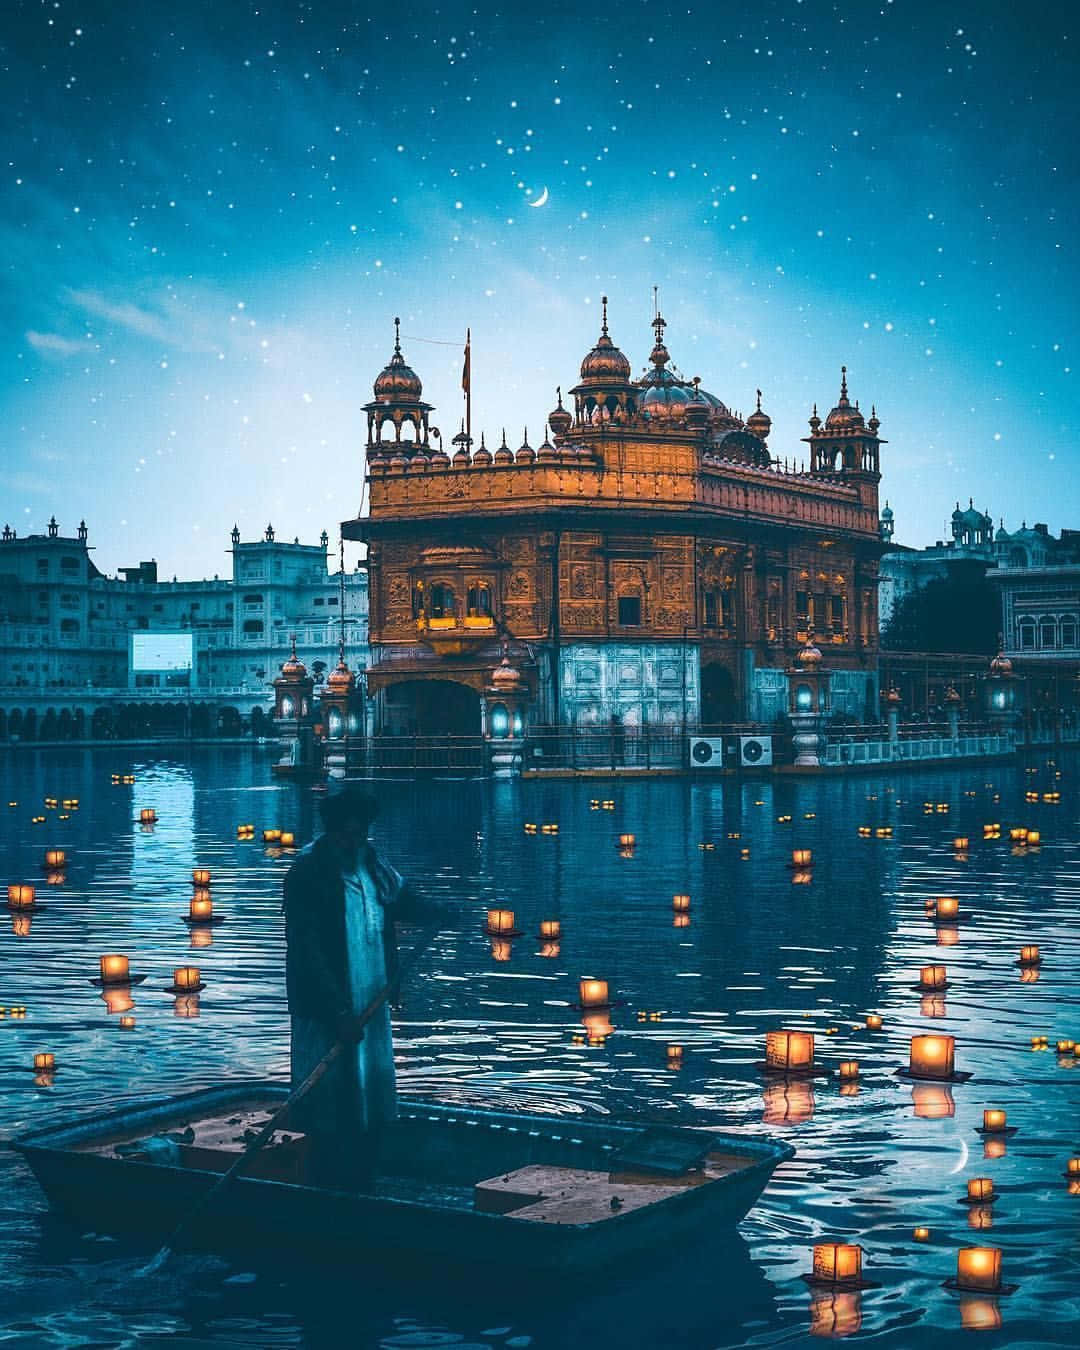 Ilmaestoso Tempio D'oro Di Amritsar Si Riflette Sulle Acque Serene